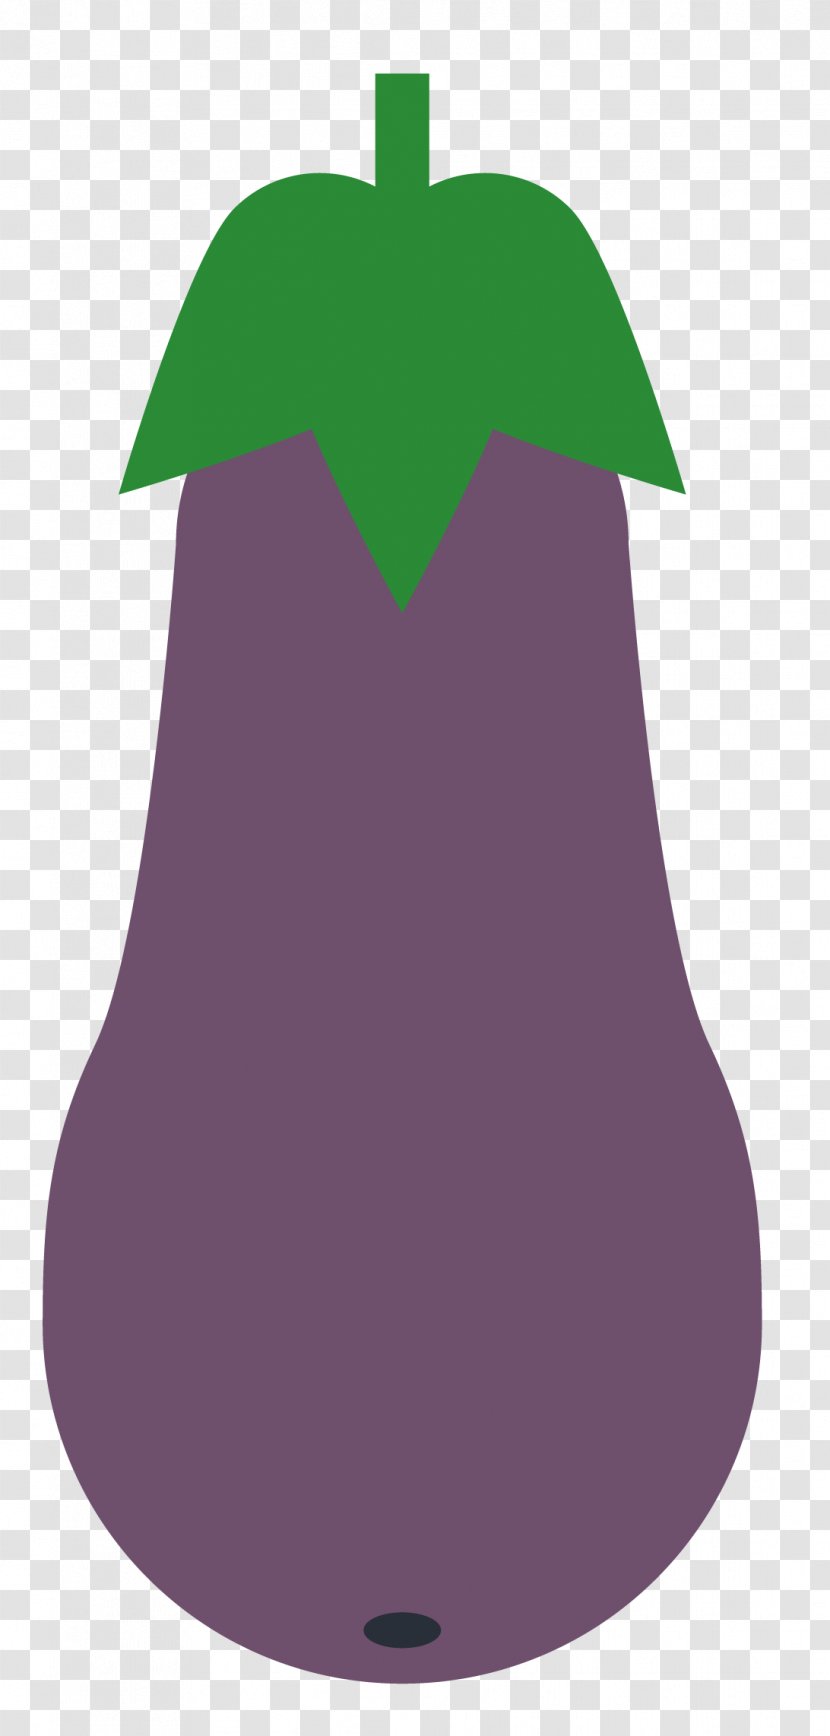 Cartoon Plant Illustration - Green - Vector Eggplant Transparent PNG